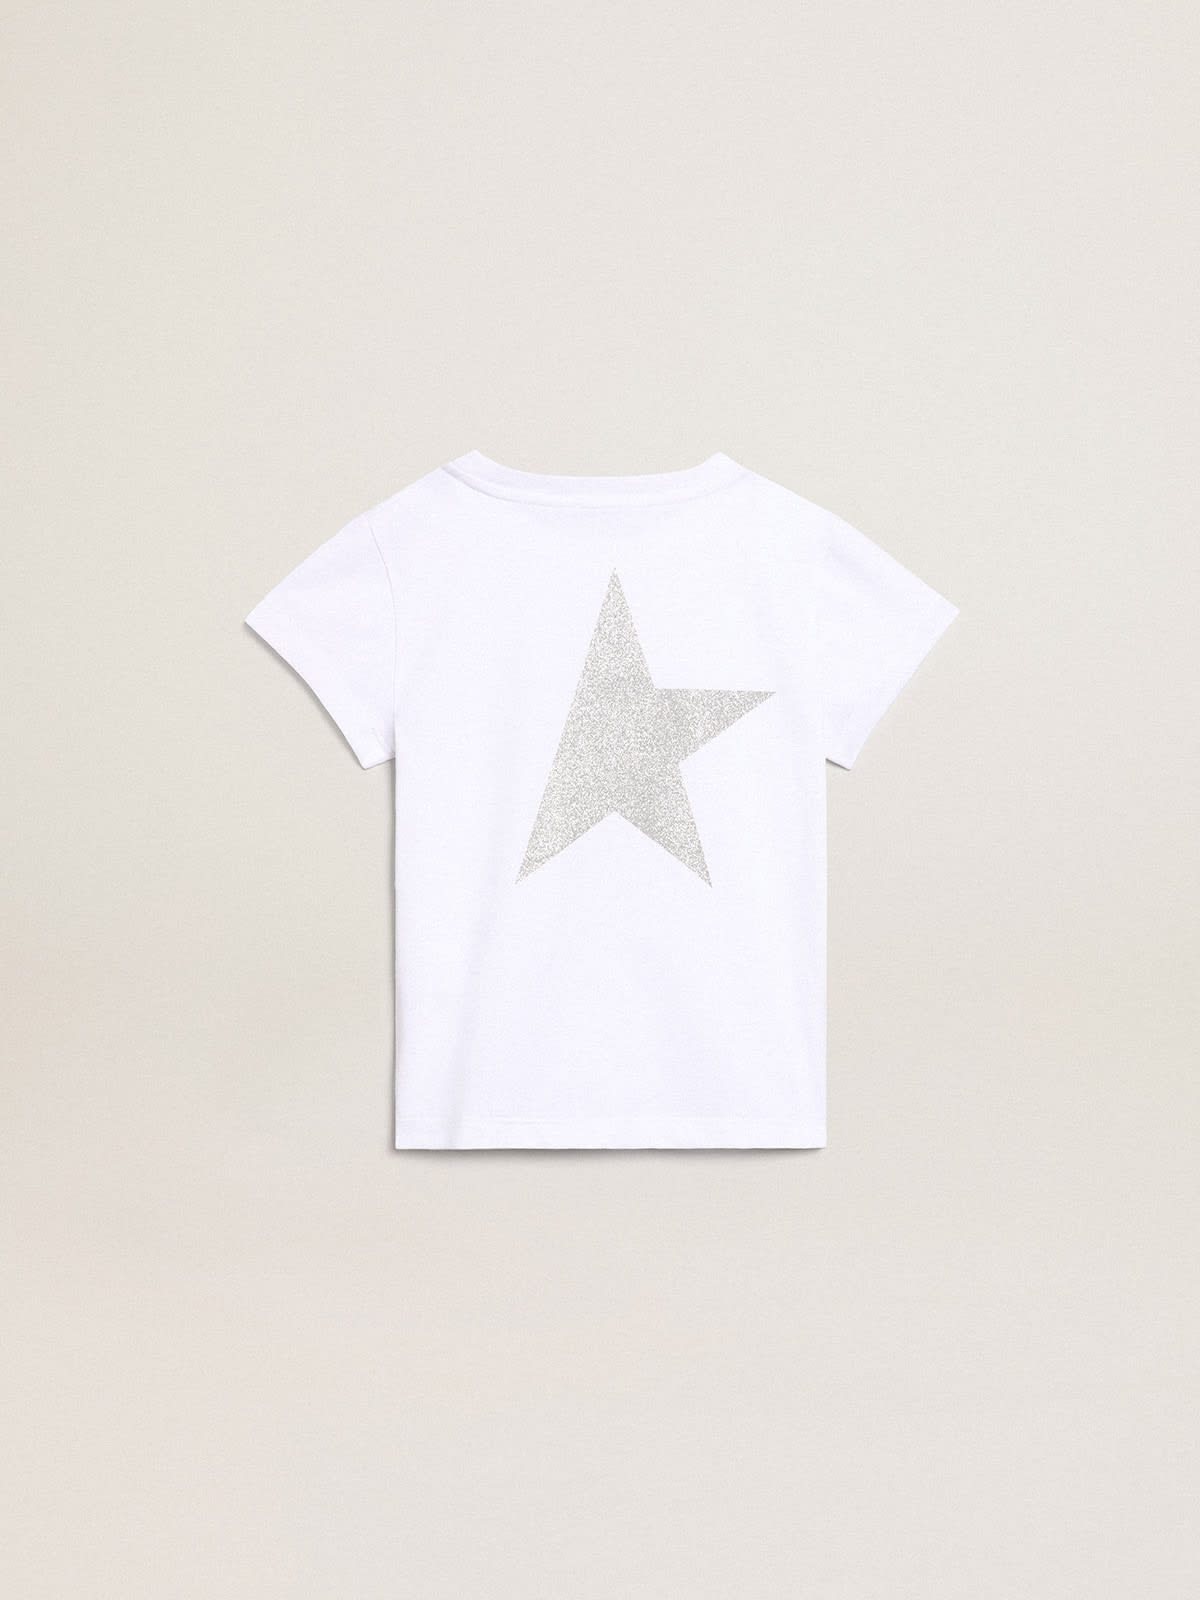 Golden Goose - T-shirt blanc et argenté avec logo et grande étoile pailletés argentés in 